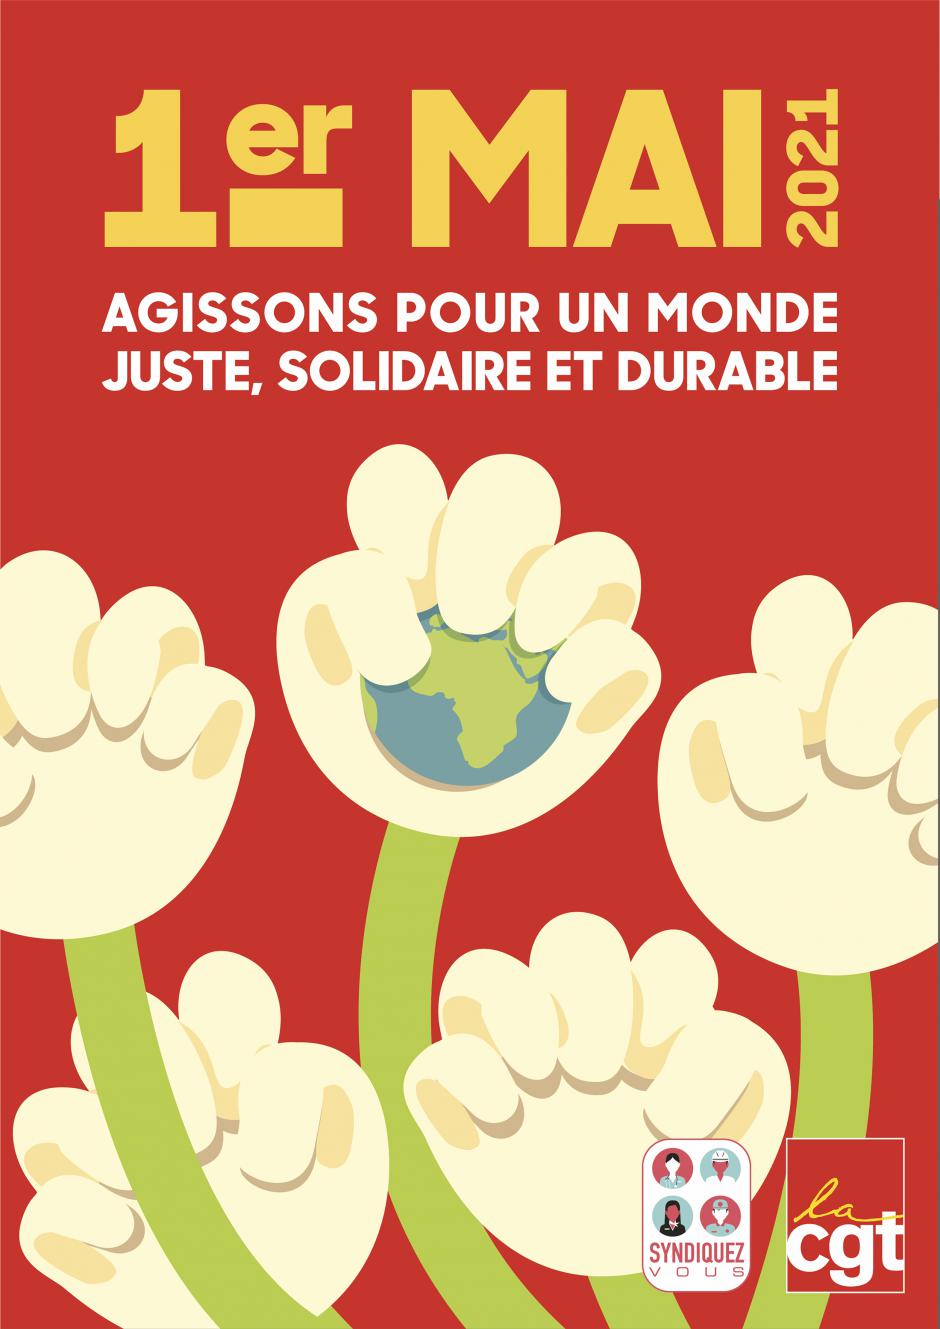 1er mai, Beauvais - Manifestation « Journée internationale des travailleurs et des travailleuses »